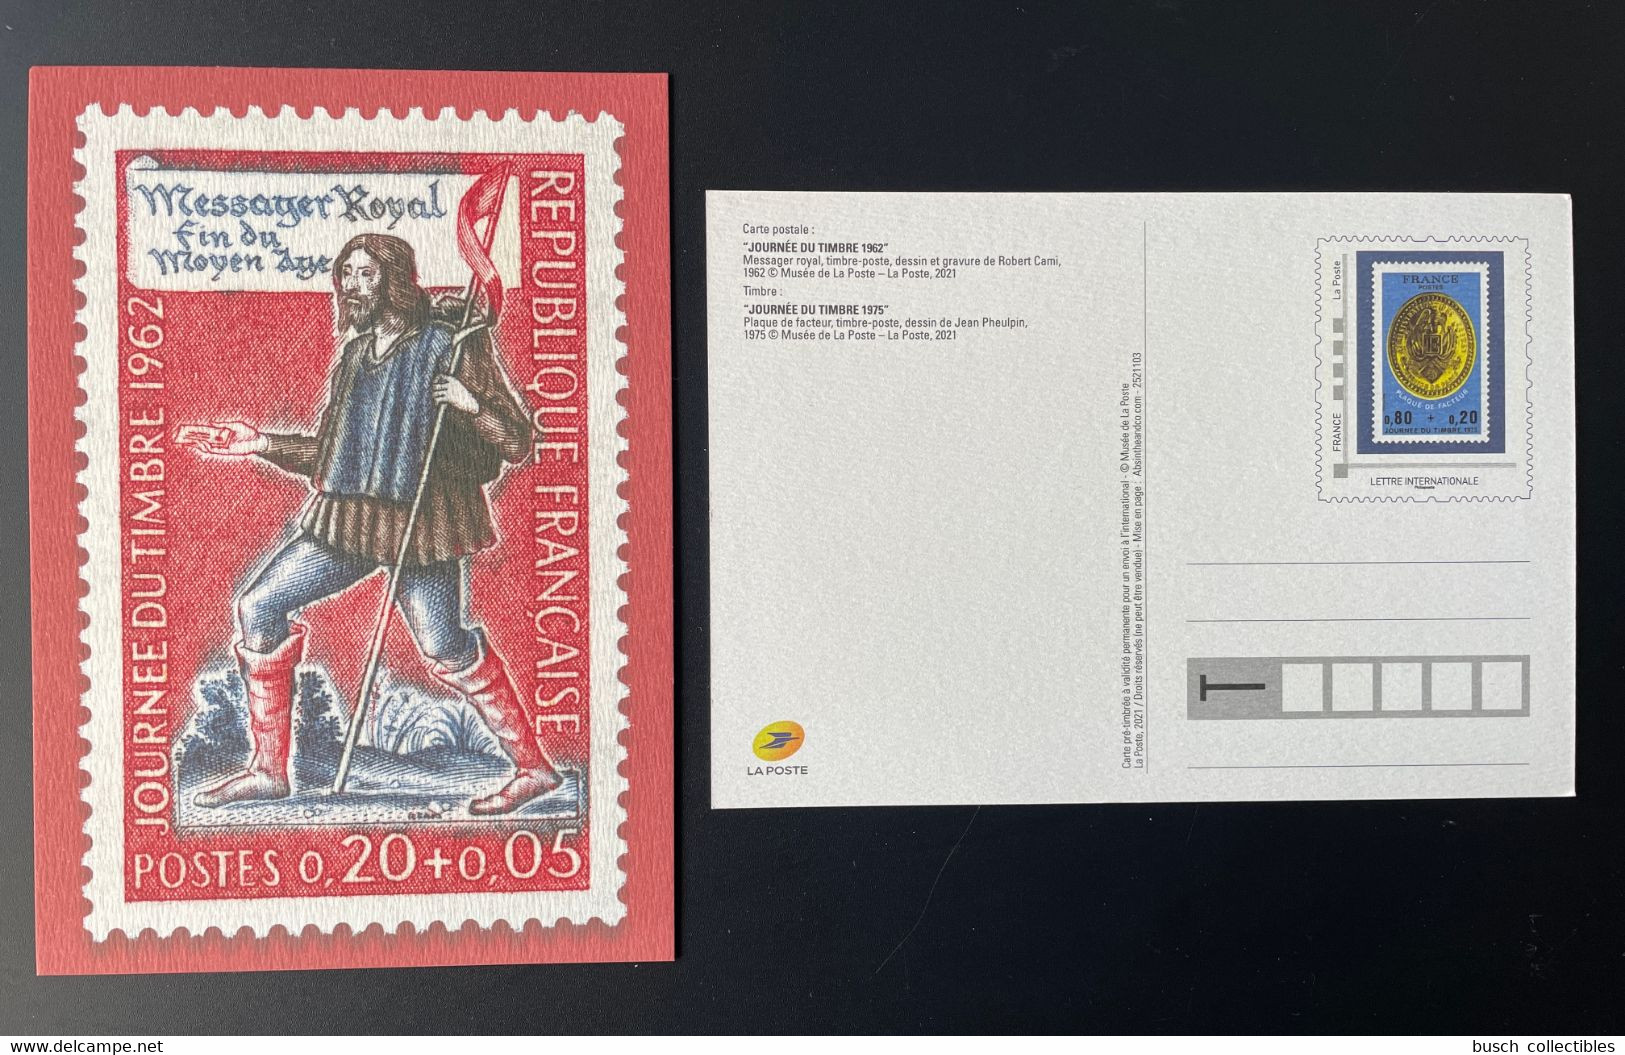 France 2021 - Carte Postale Entier Journée Du Timbre 1962 Messager Royal Fin Du Moyen Âge - Enteros Administrativos